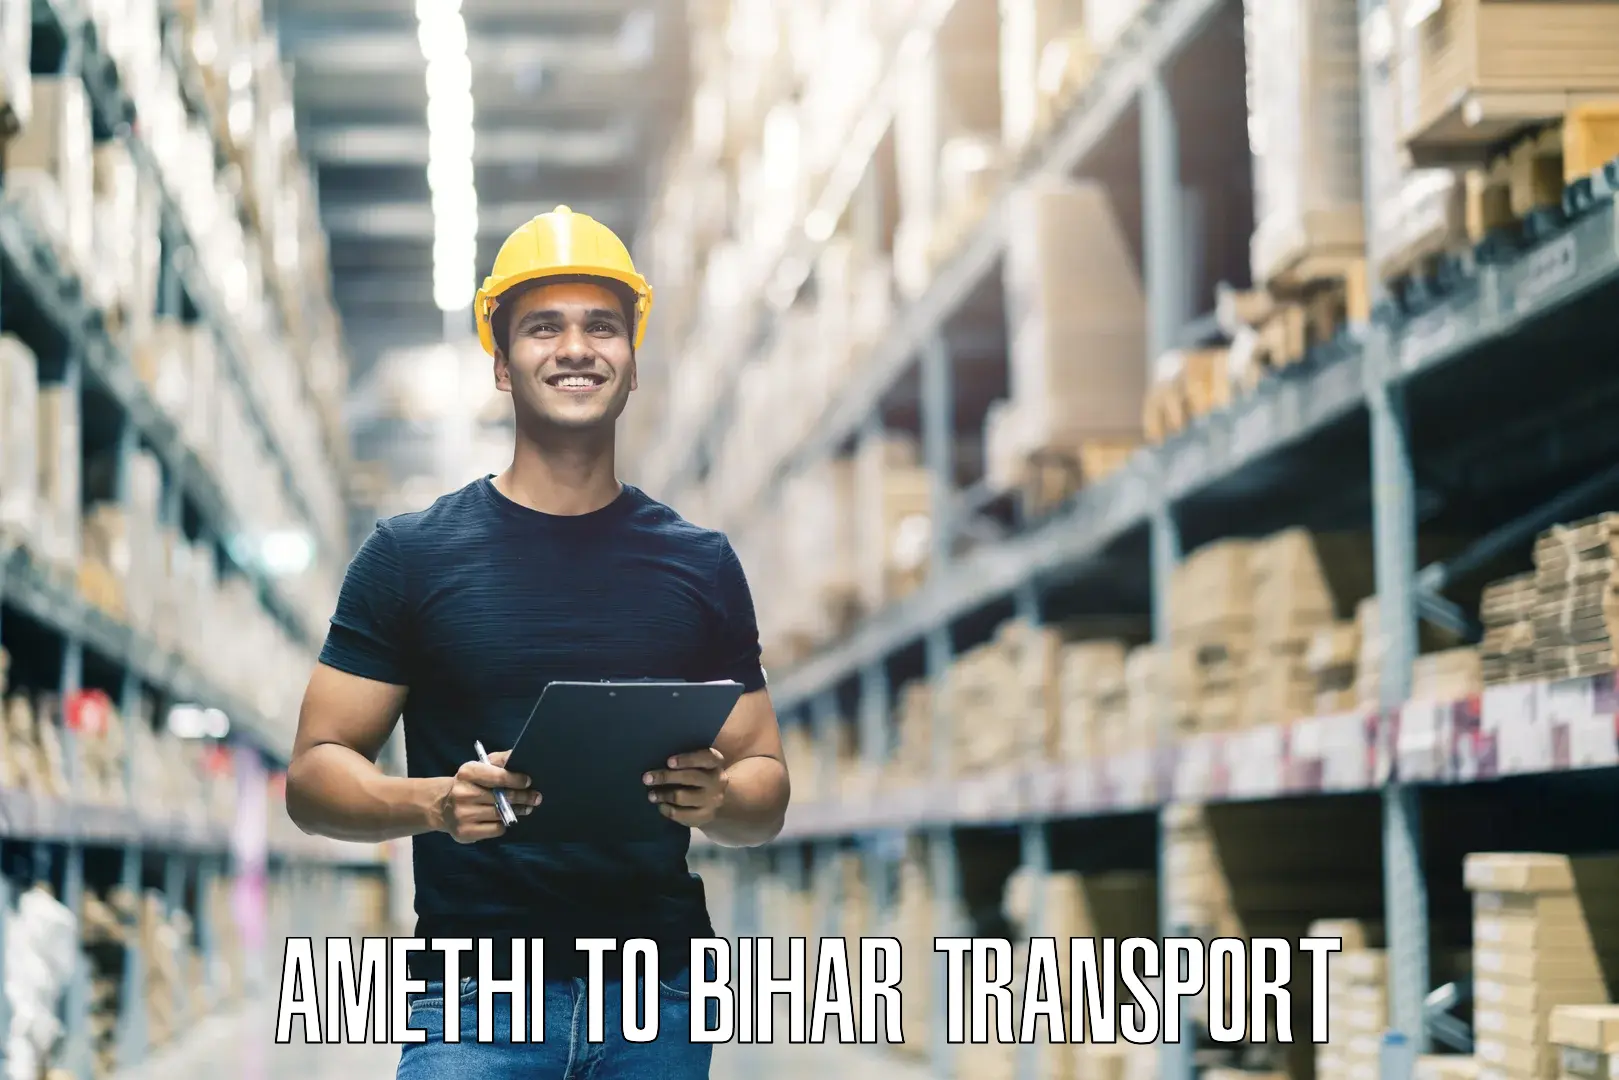 Parcel transport services Amethi to Bihar